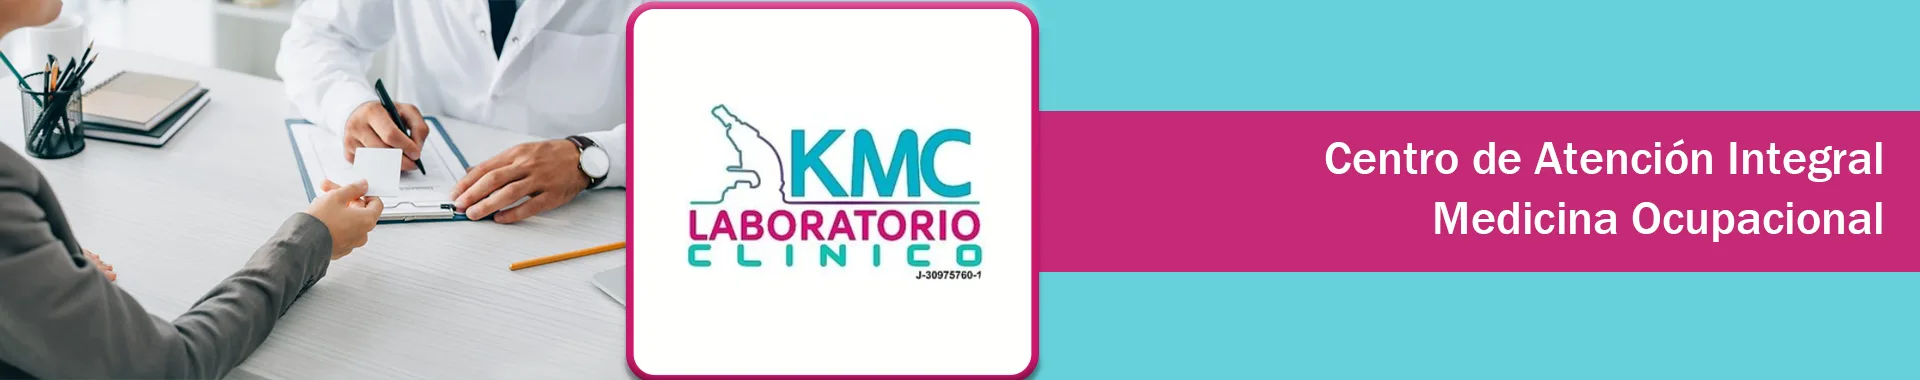 Imagen 3 del perfil de KMC Laboratorio Clínico